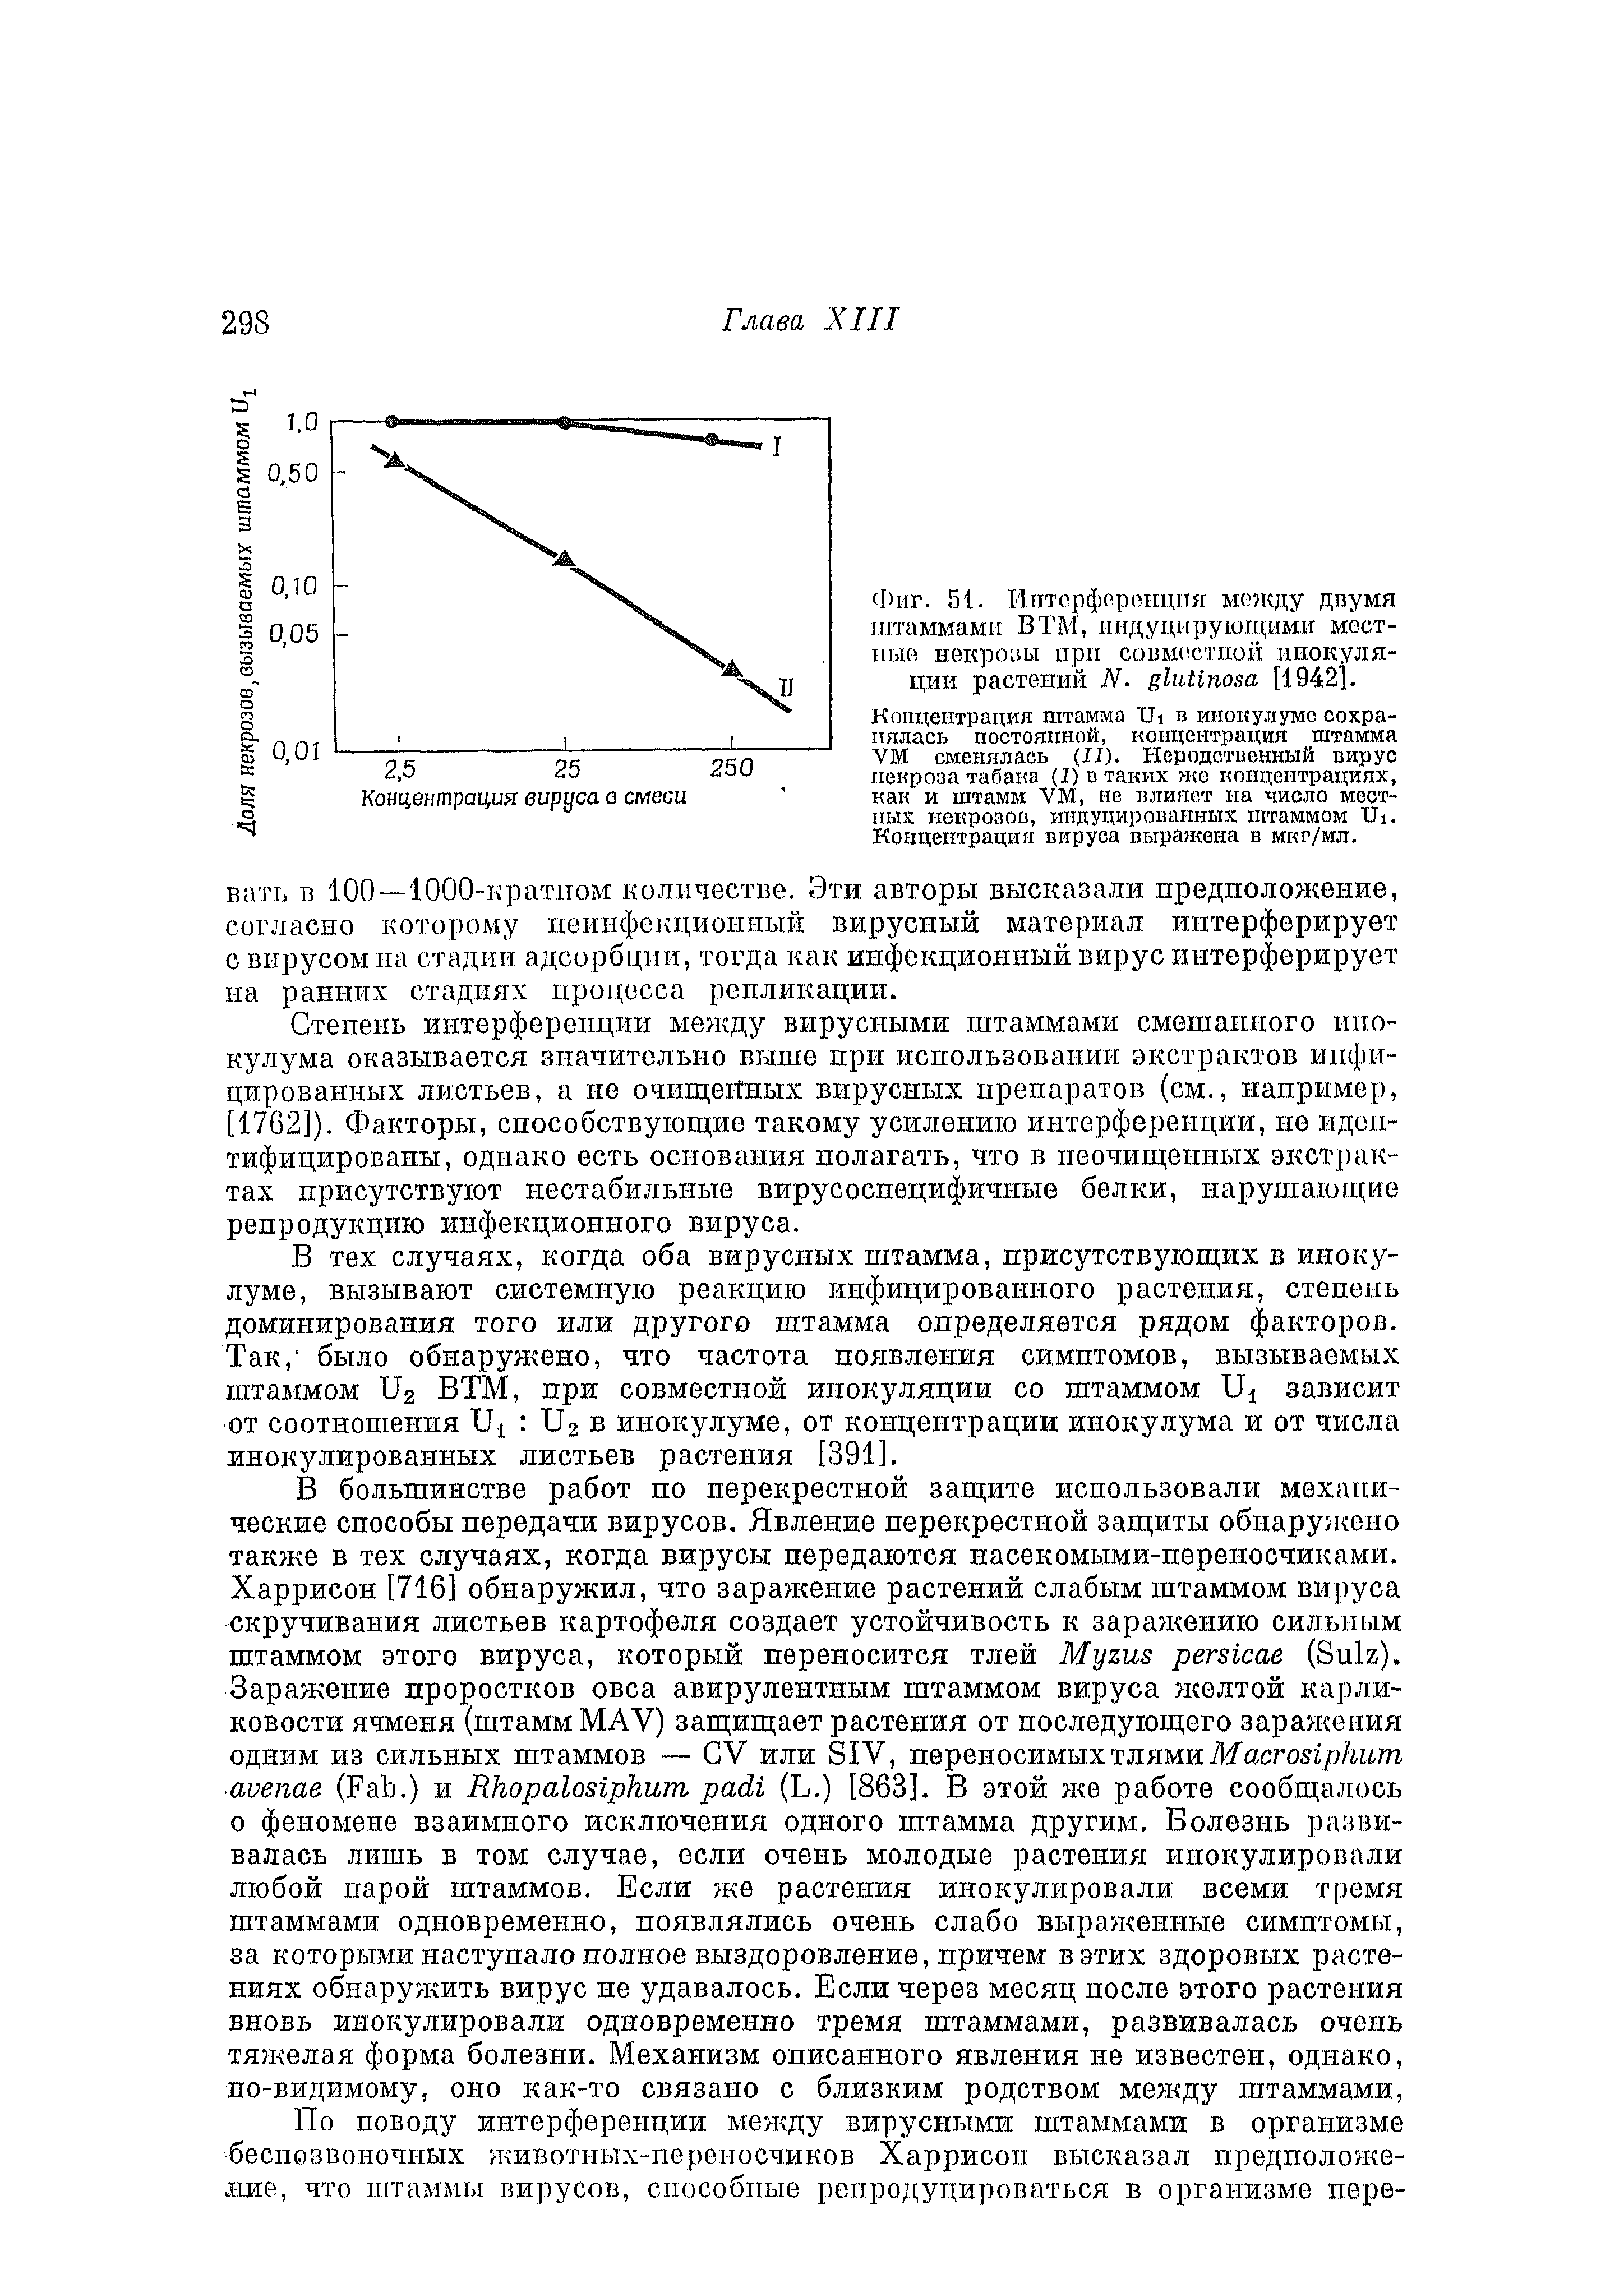 Фиг. 51. Интерференция между двумя штаммами ВТМ, индуцирующими местные некрозы прп совместной инокуляции растений N. [1942].